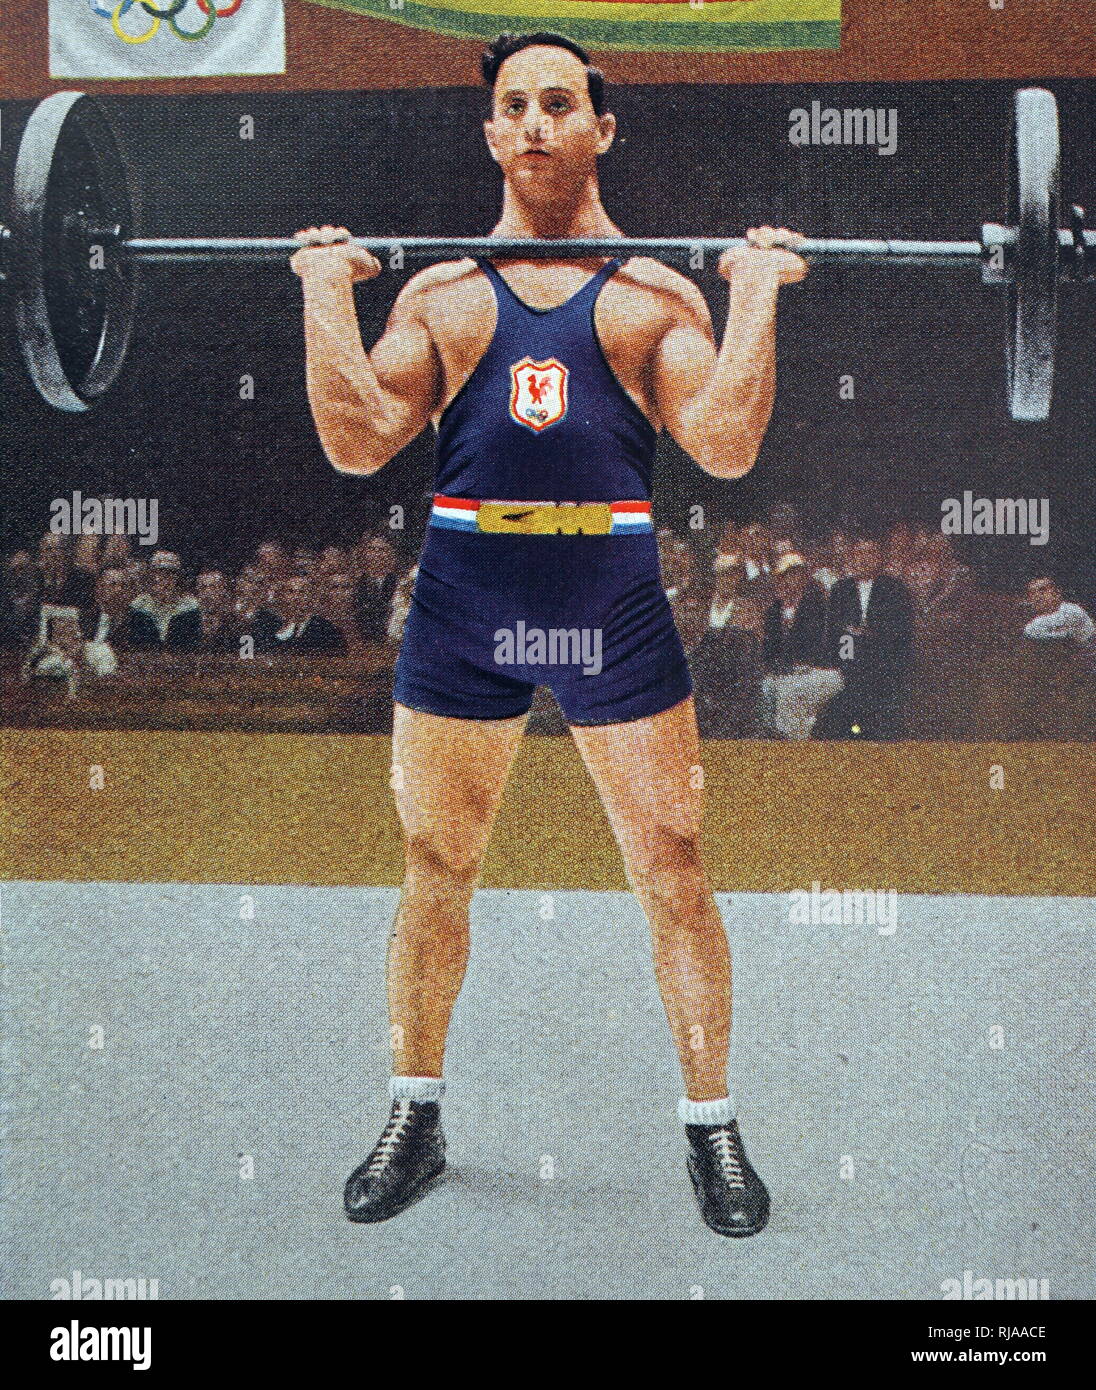 Foto von René Duverger (1911 - 1983) im Jahr 1932 Olympische Spiele. Rene gewann Gold in der 67,5 kg Klasse Gewichtheben für Frankreich. Stockfoto